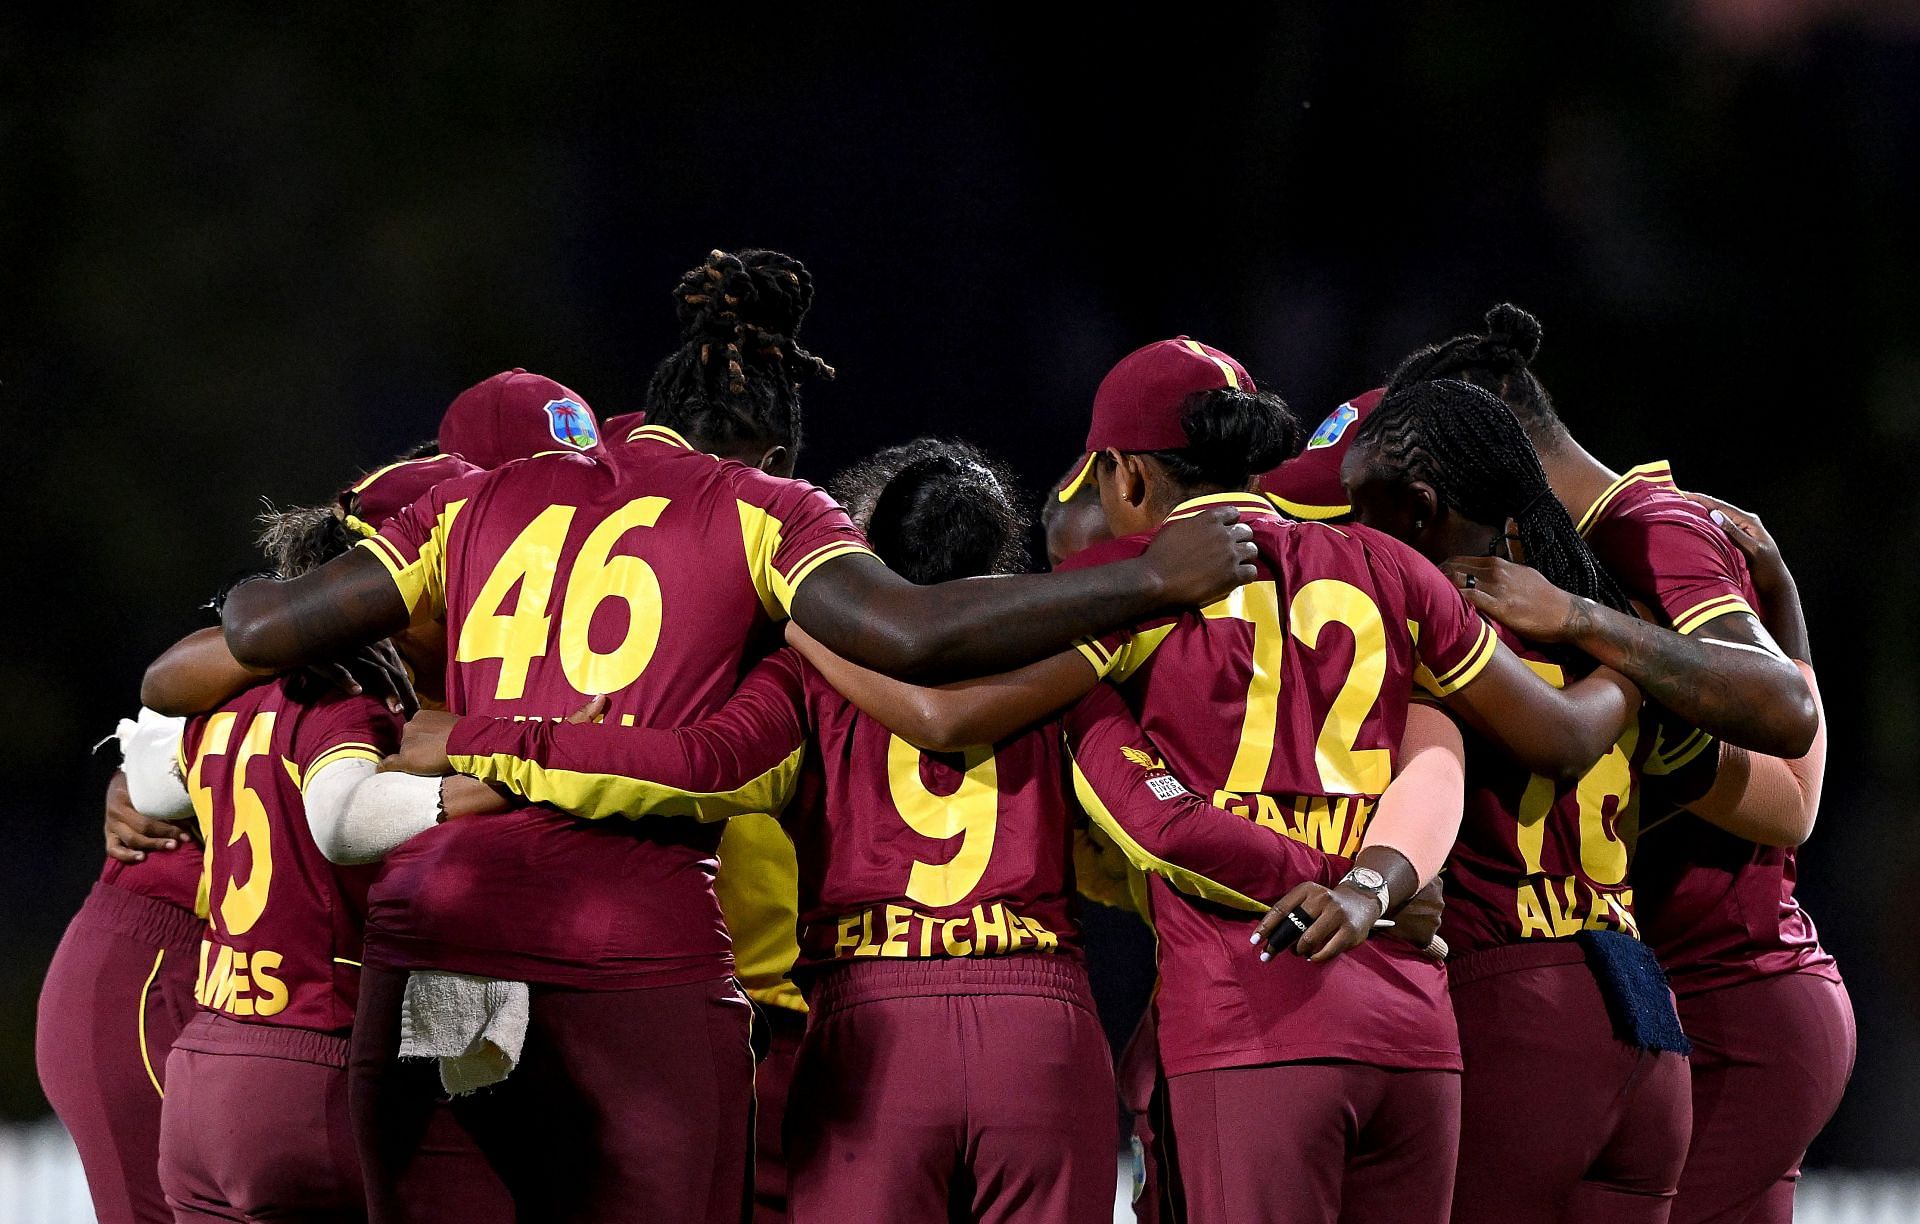 Australia v West Indies - Women